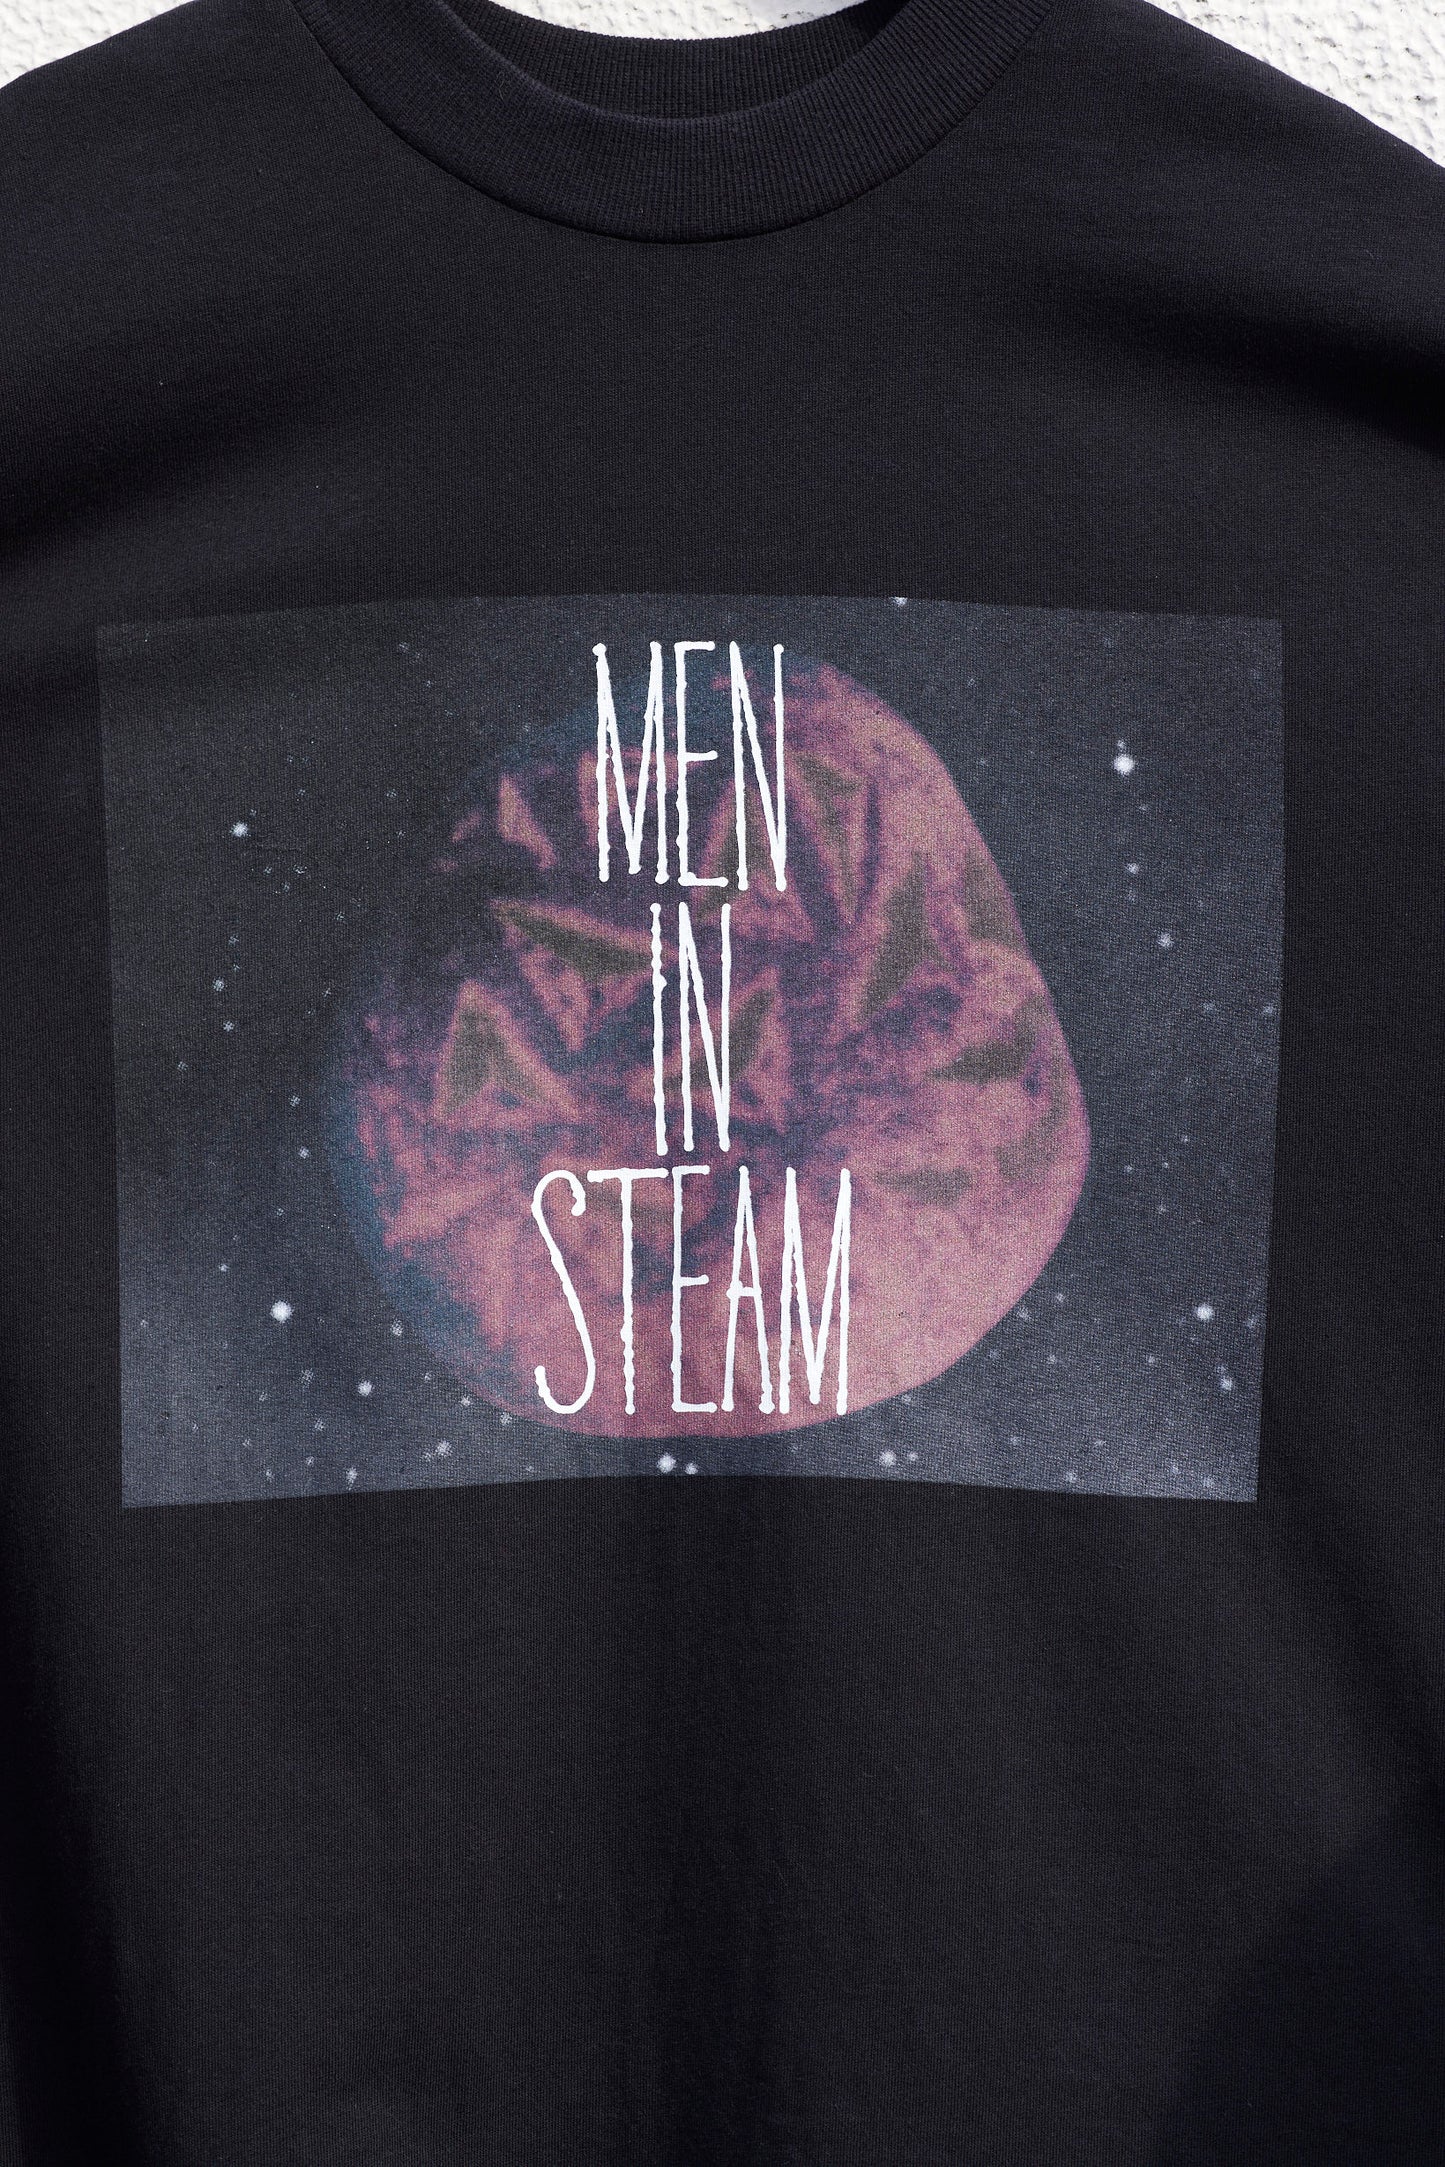 man in steam t-shirts